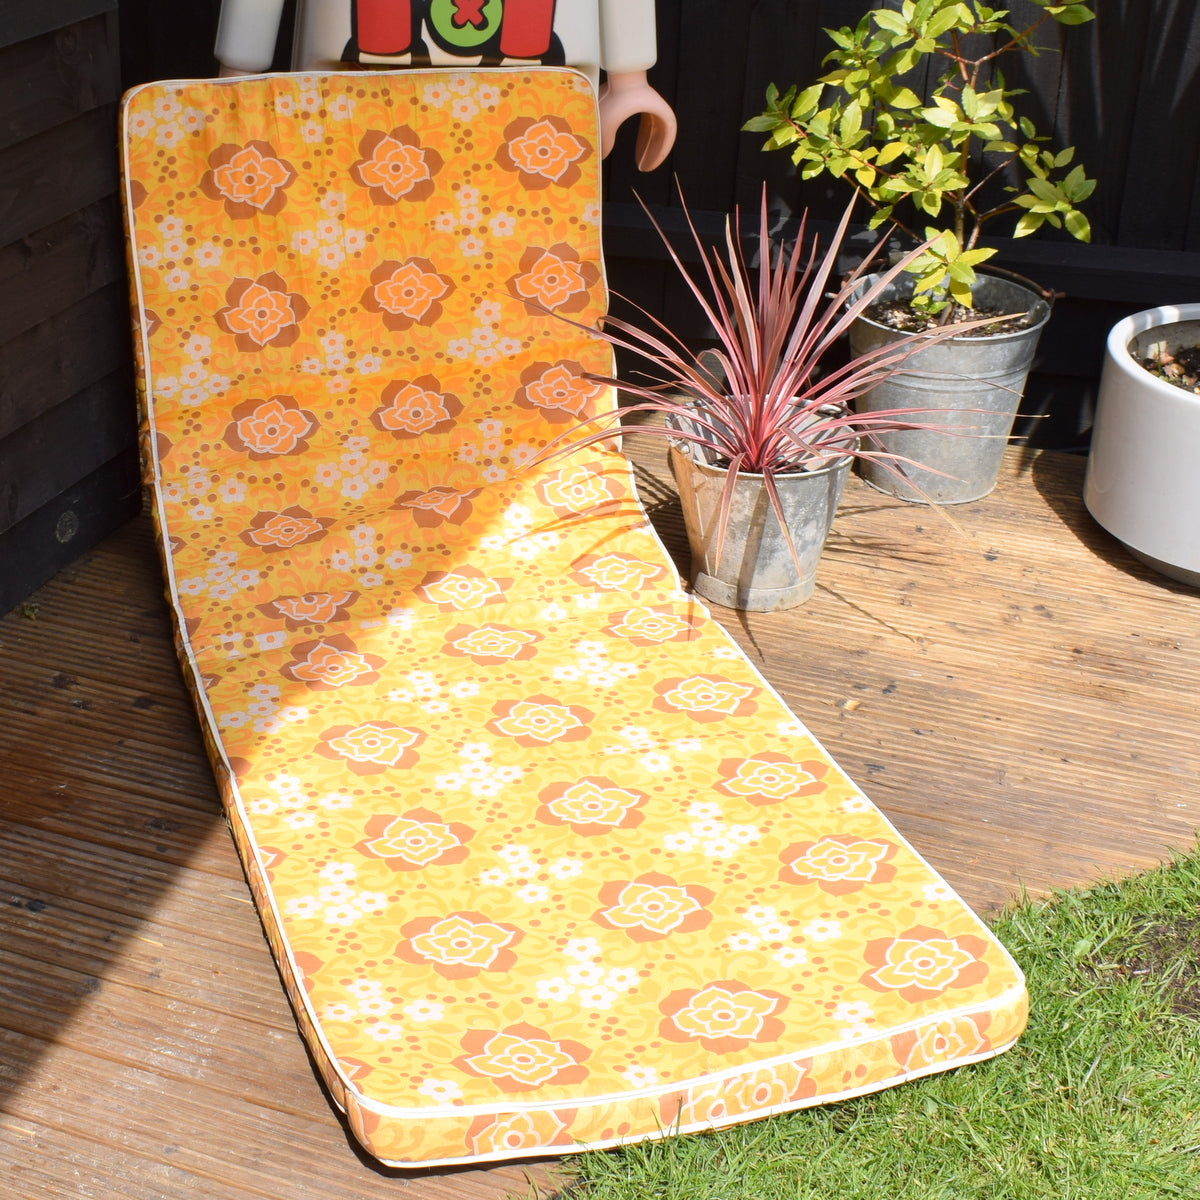 Vintage 1960s Garden Cushion / Mattress - Yellow Flower Power